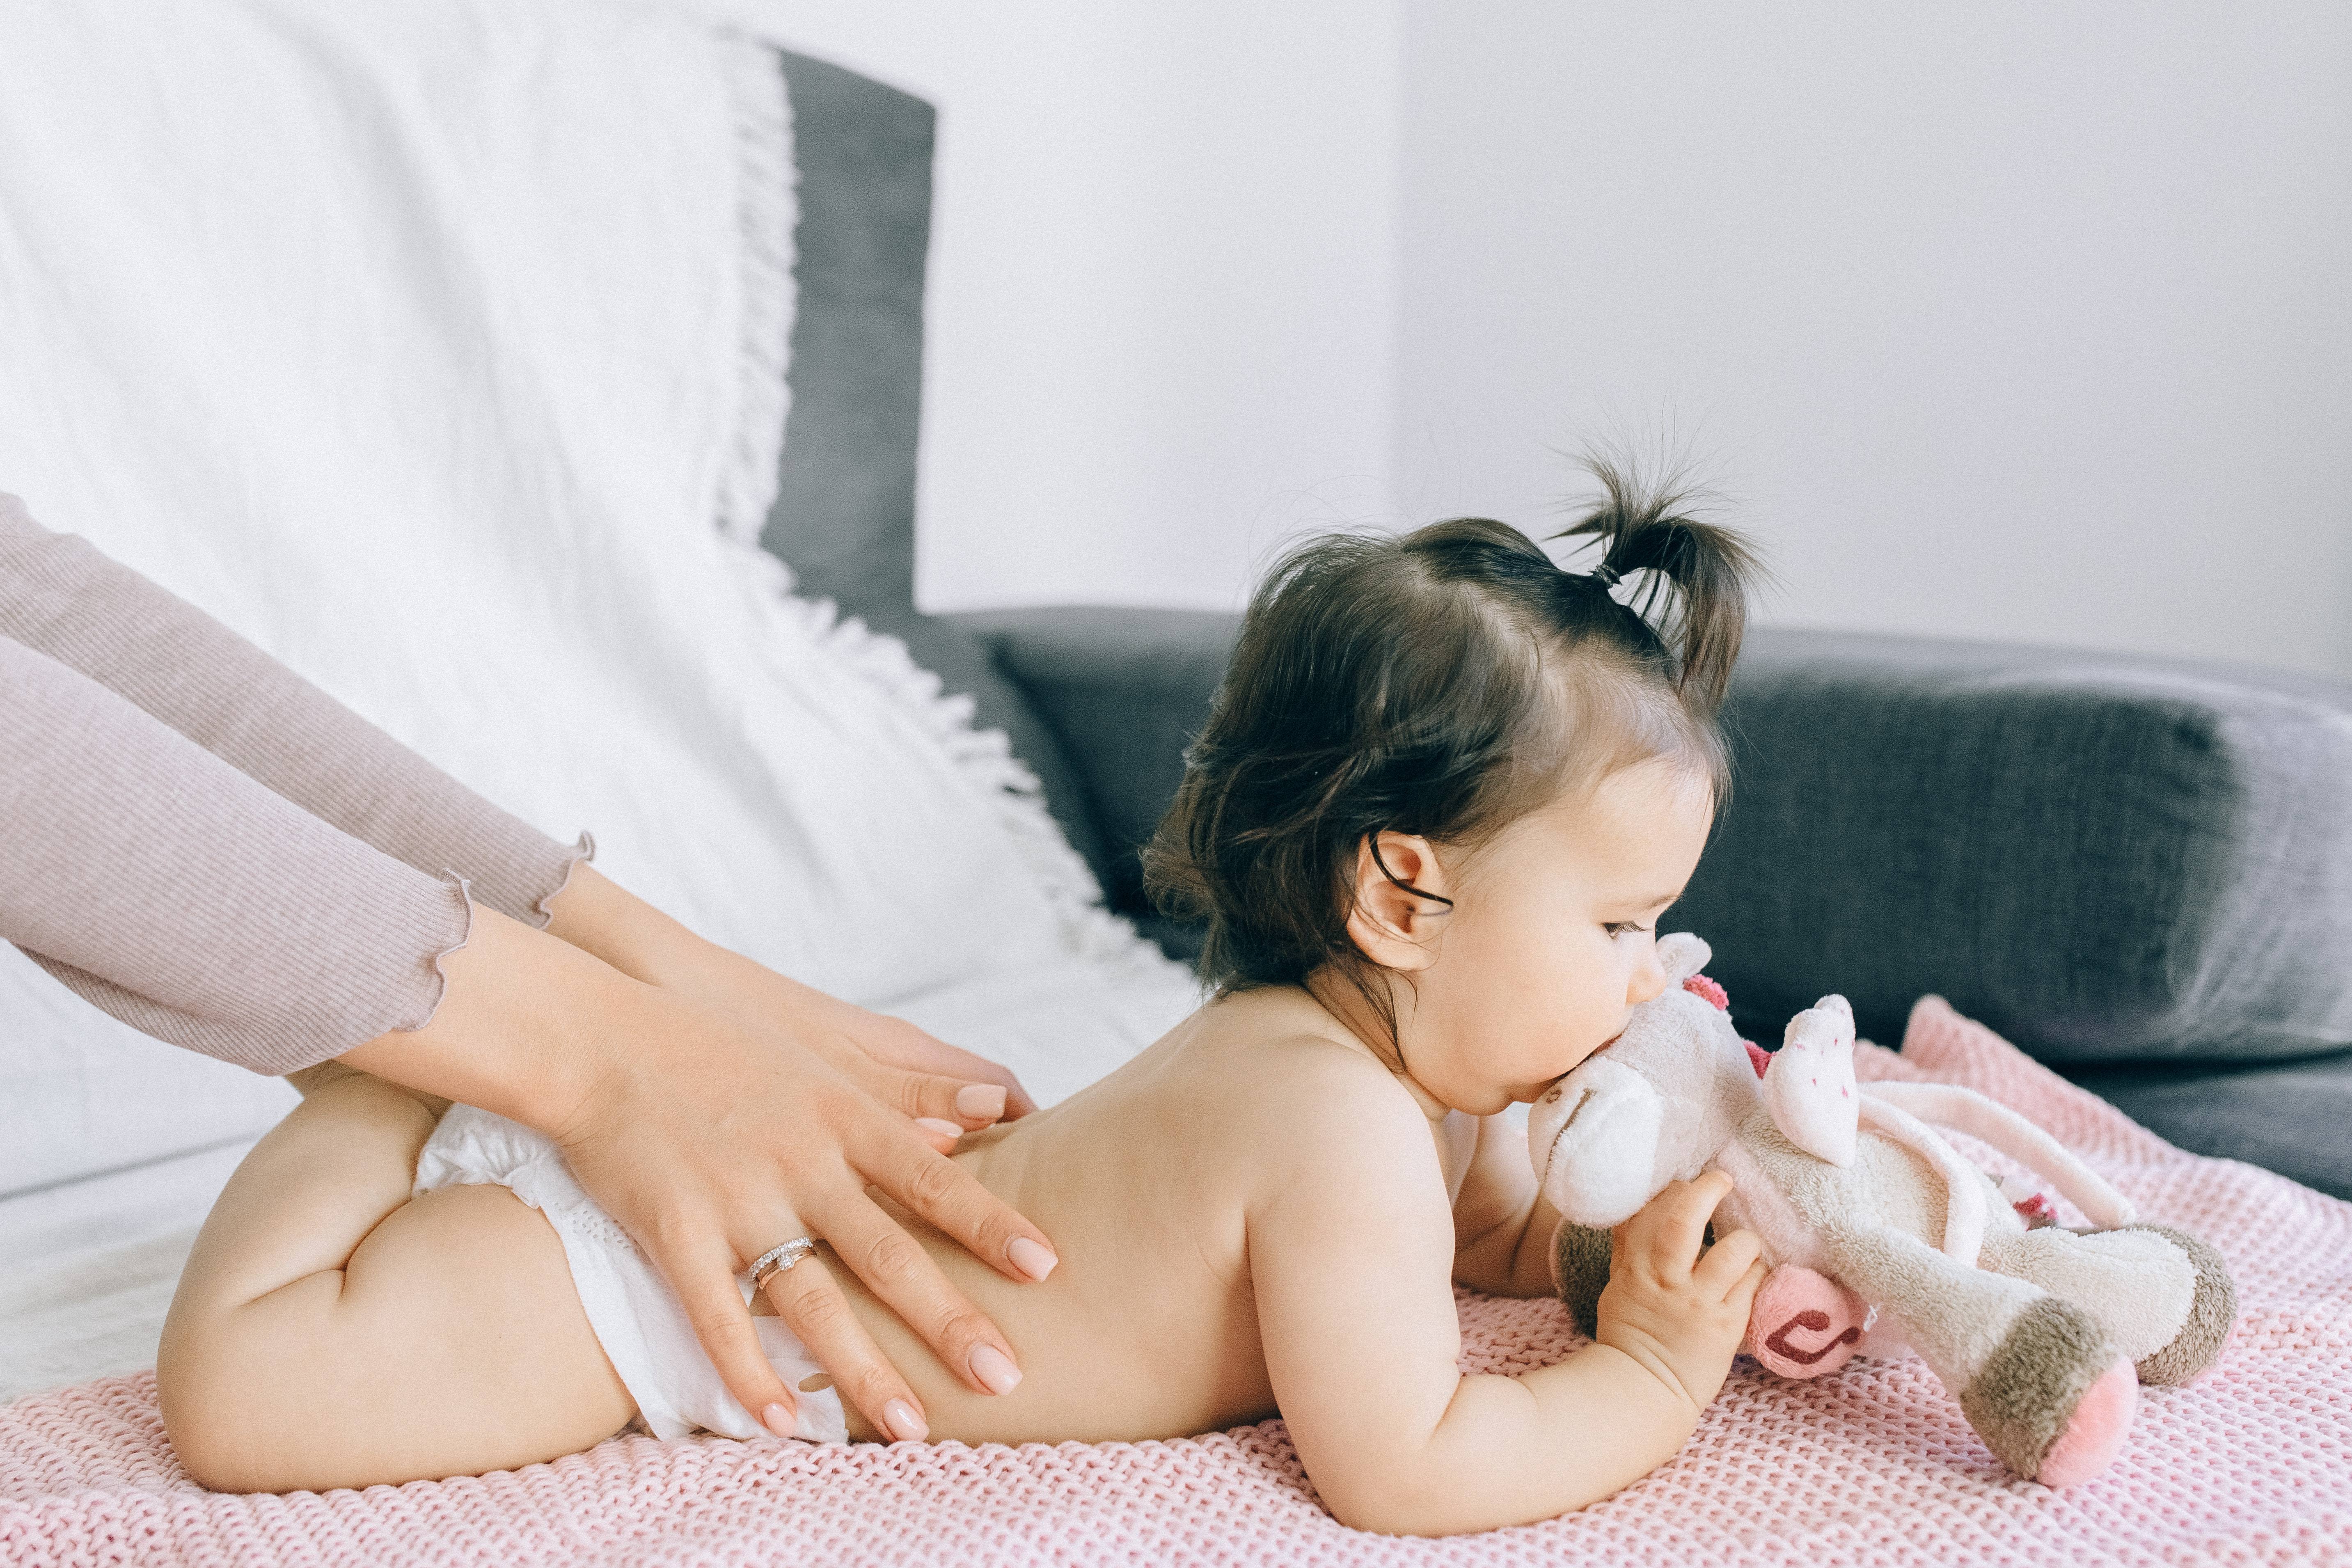 Come cresce il bambino nei primi 12 mesi di vita - Amico Pediatra